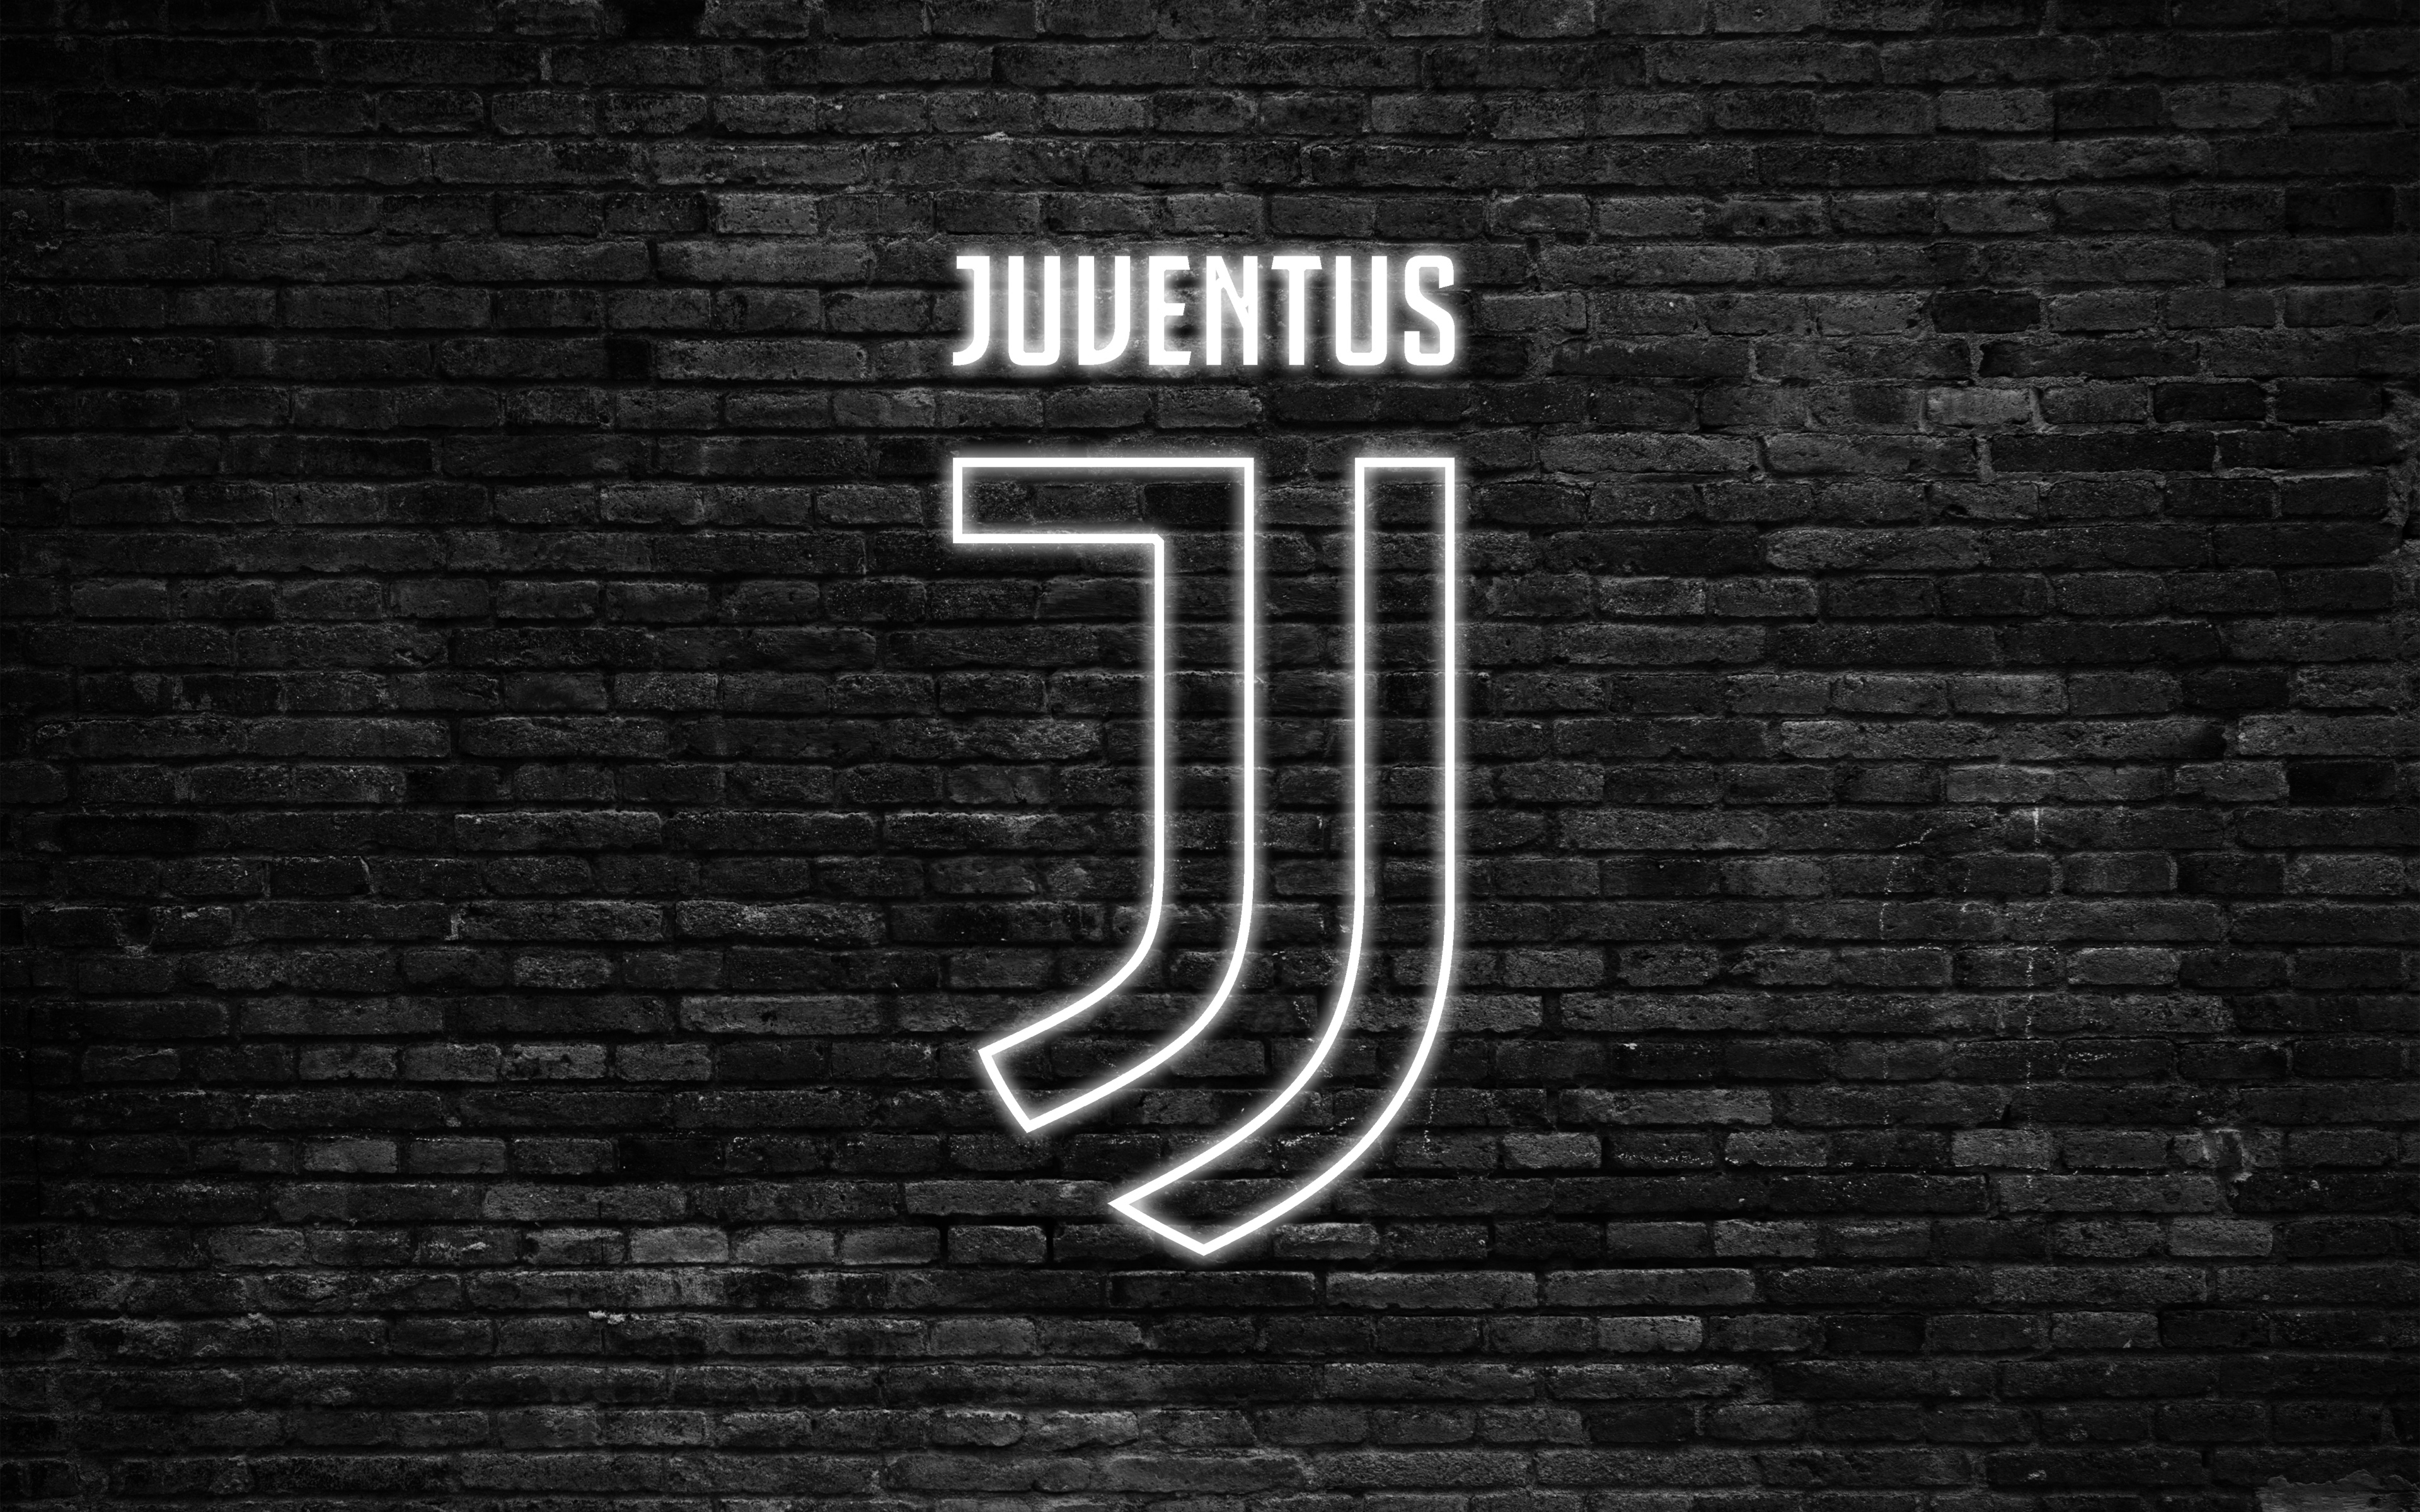  Juventus  Logo 4k  Ultra HD Wallpaper  Background Image 